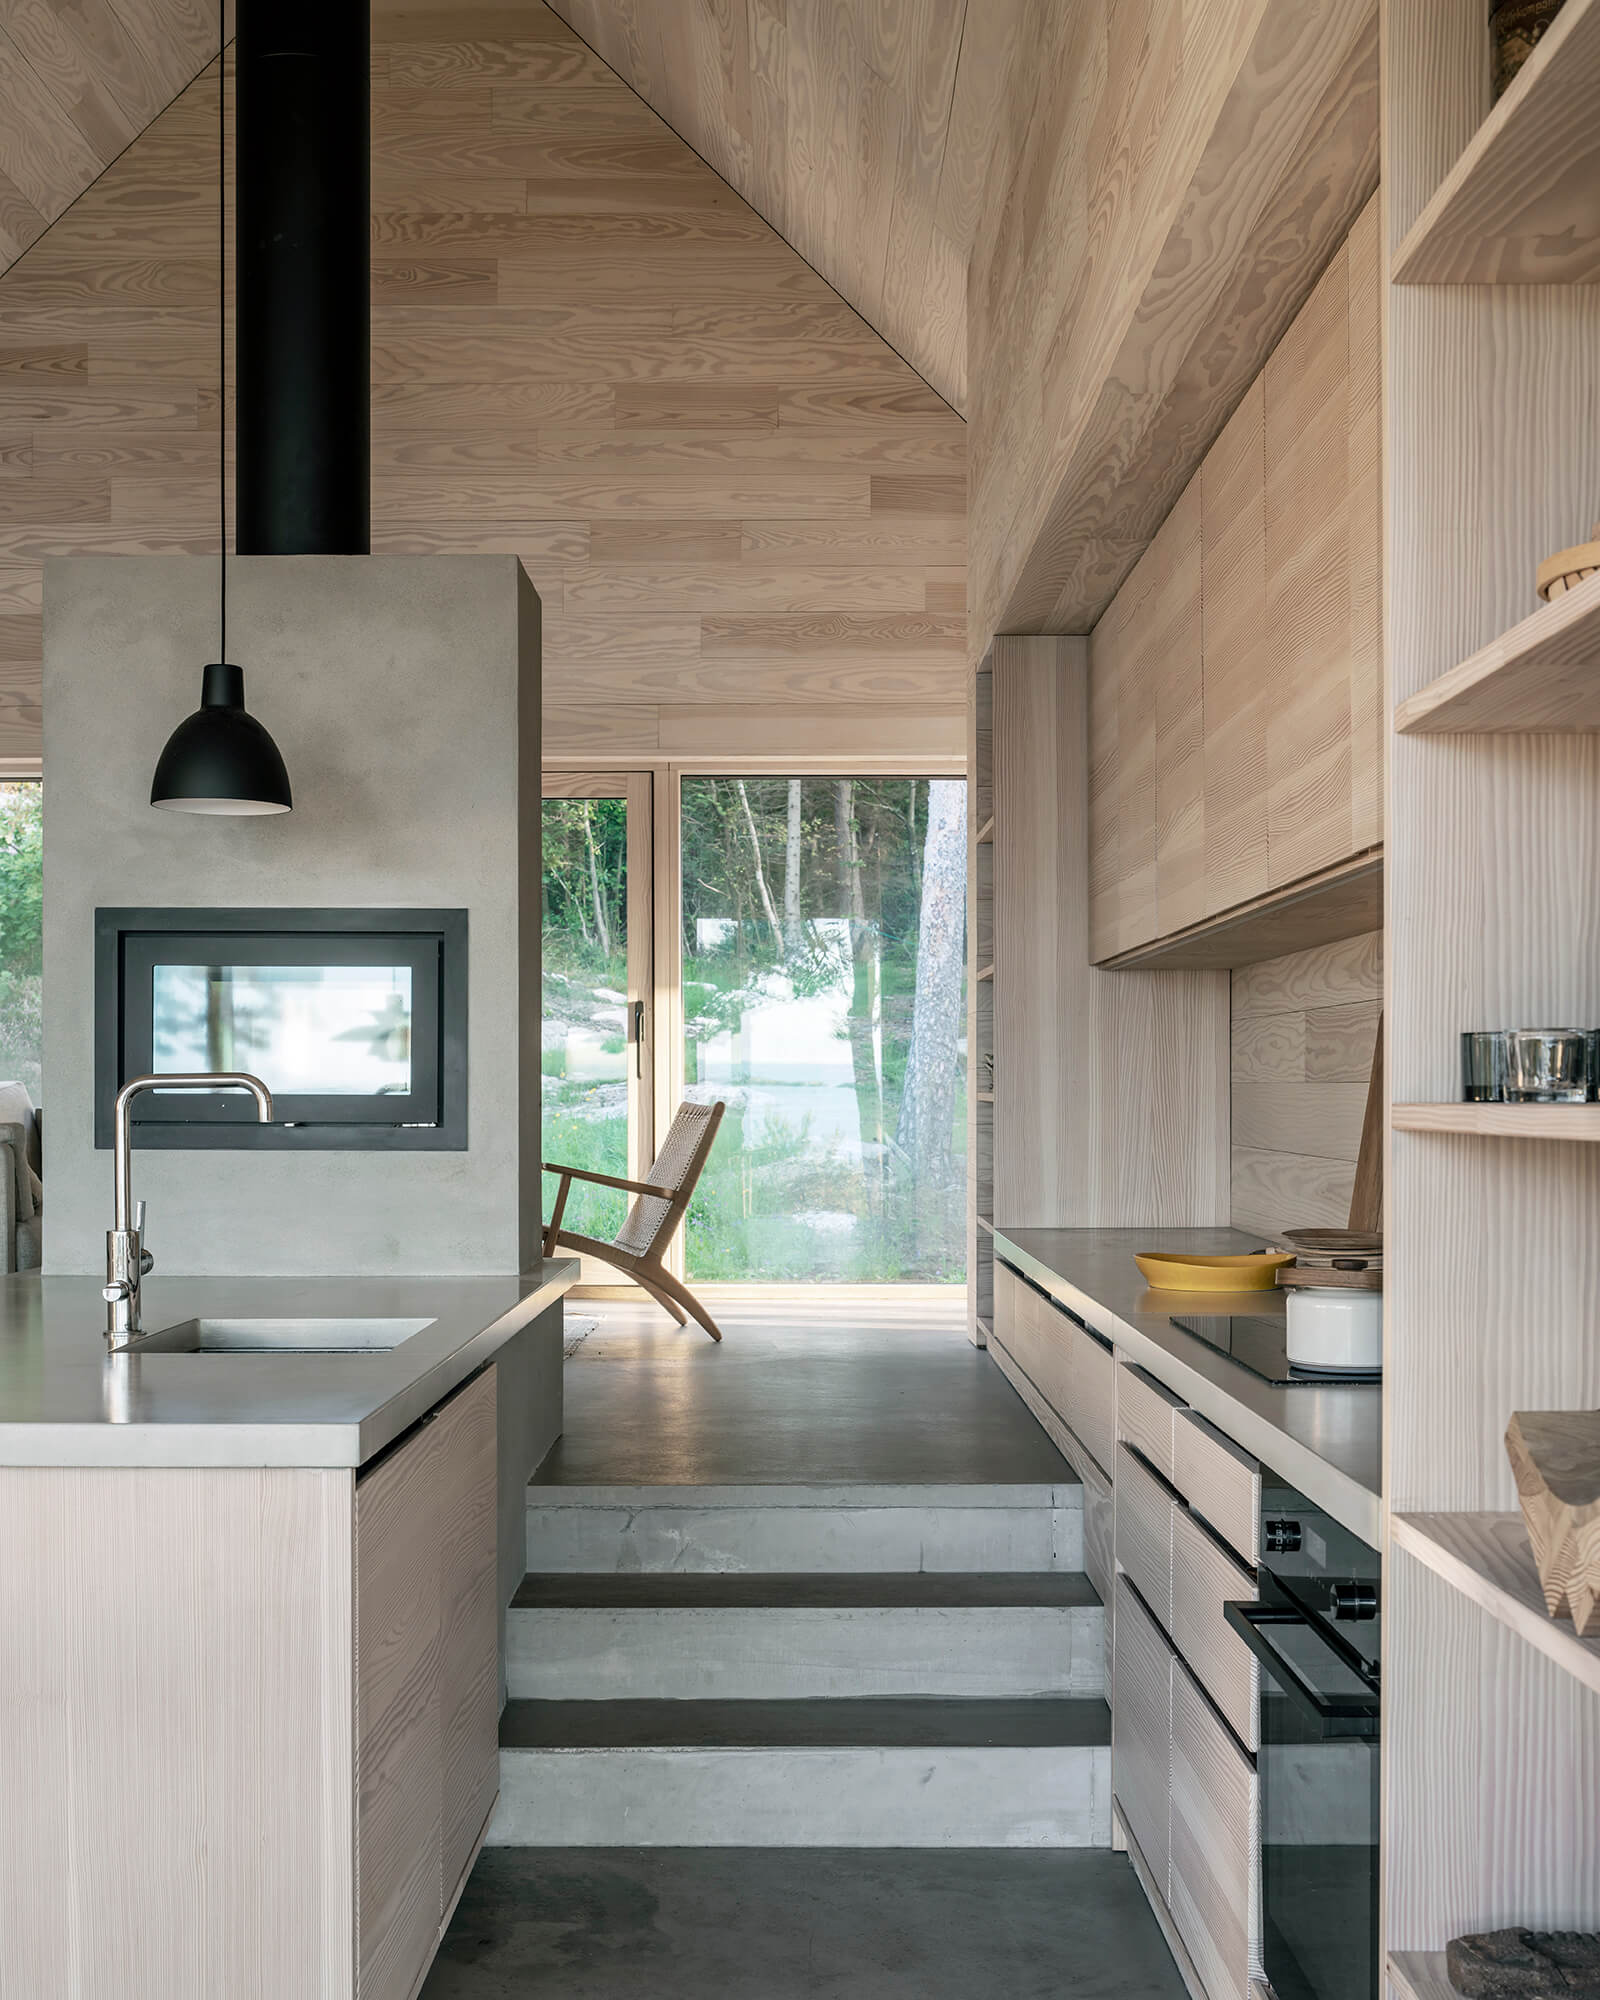 Des finitions de matériaux complémentaires lient l'intérieur | Saltviga House | Kolman Boye Architects | STIRworld